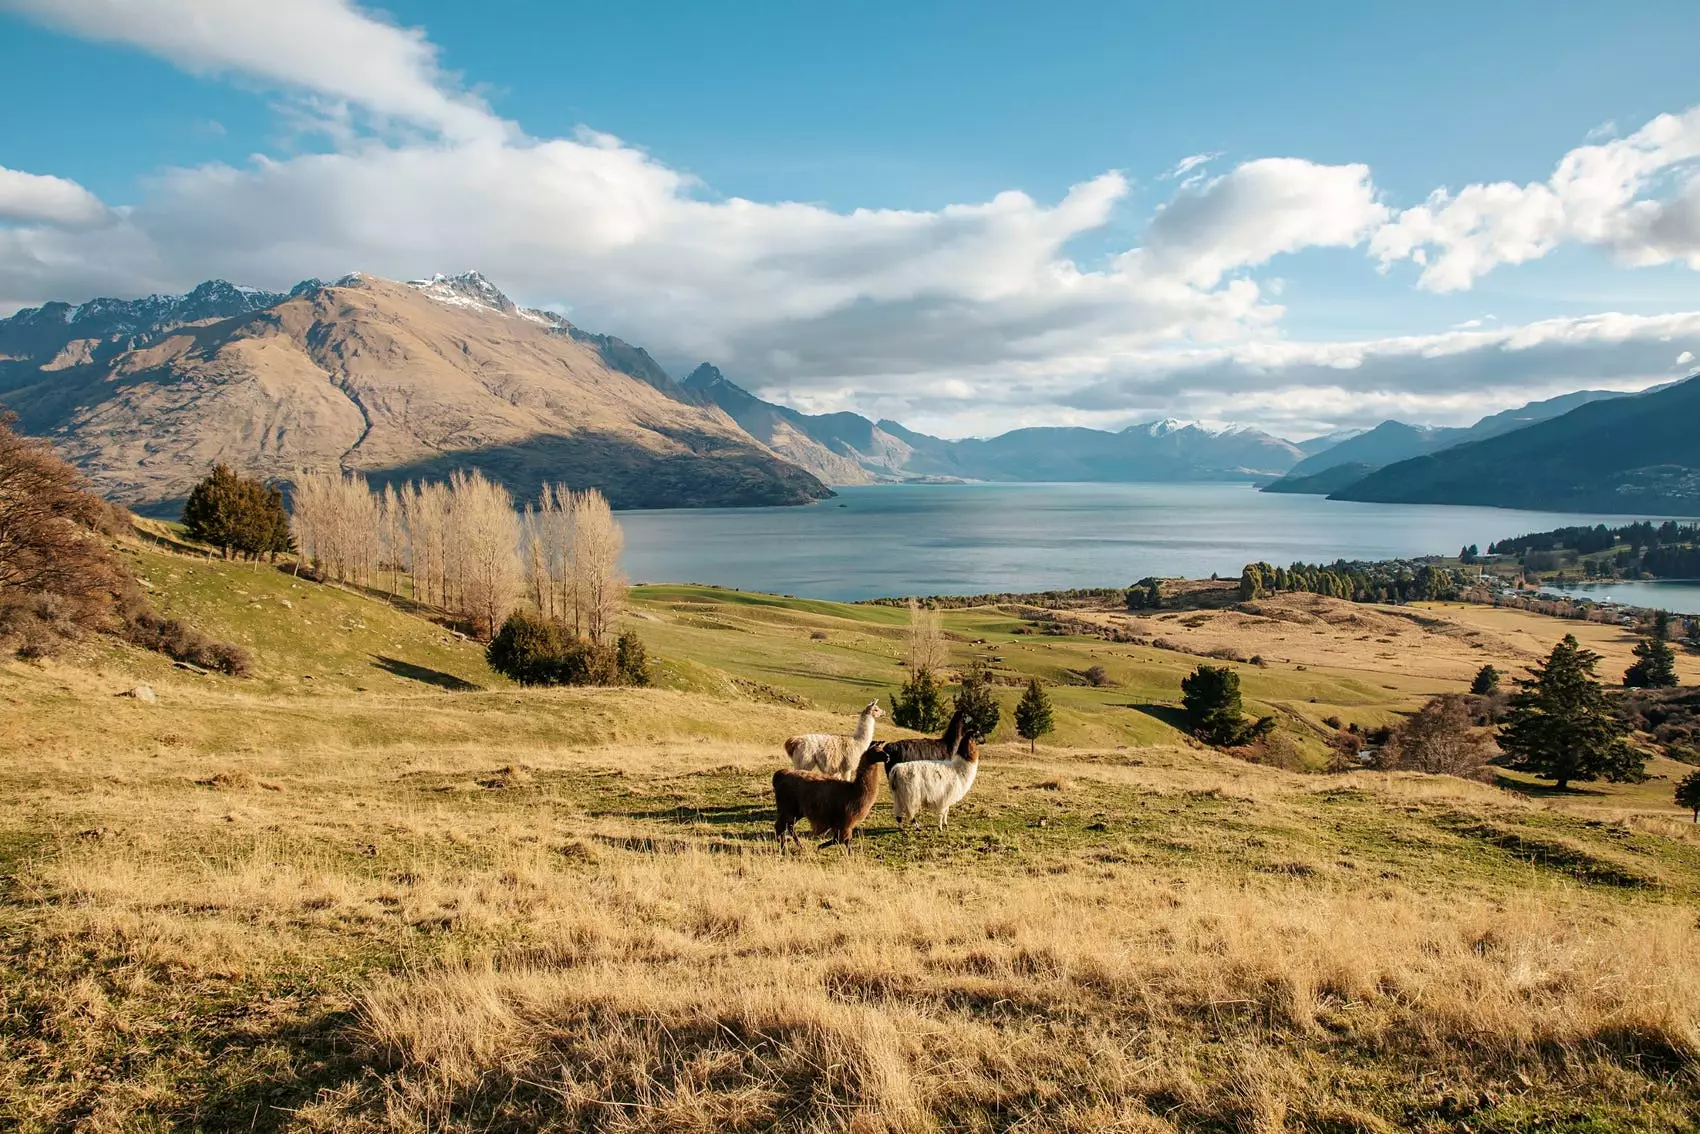 Місця зйомок "Володаря перснів" в Новій Зеландії